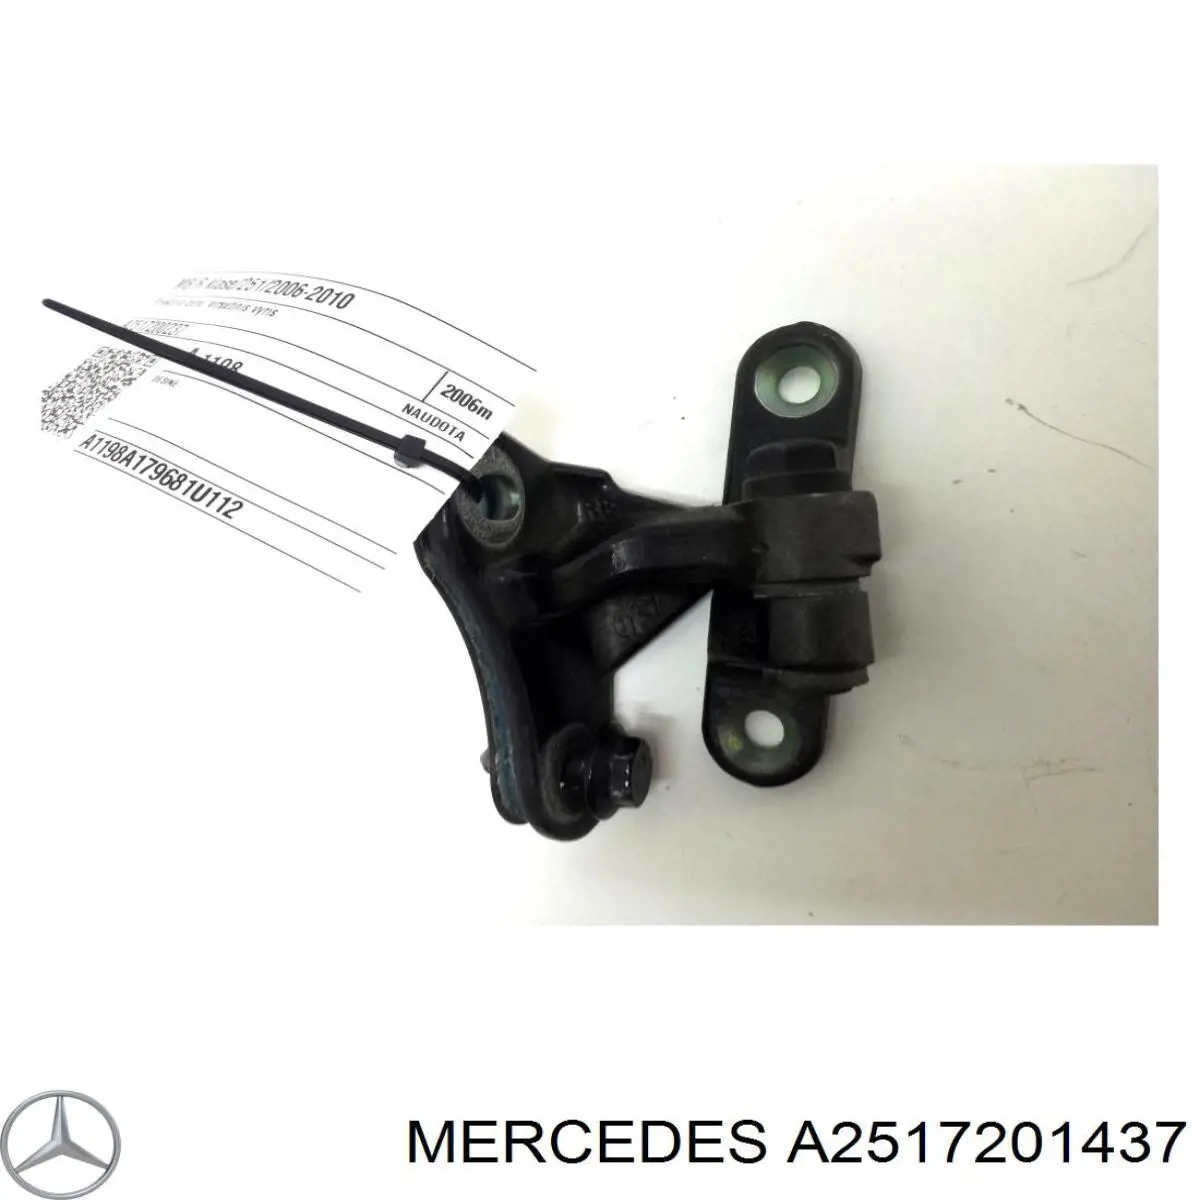 Bisagra delantera derecha para Mercedes ML/GLE (W164)